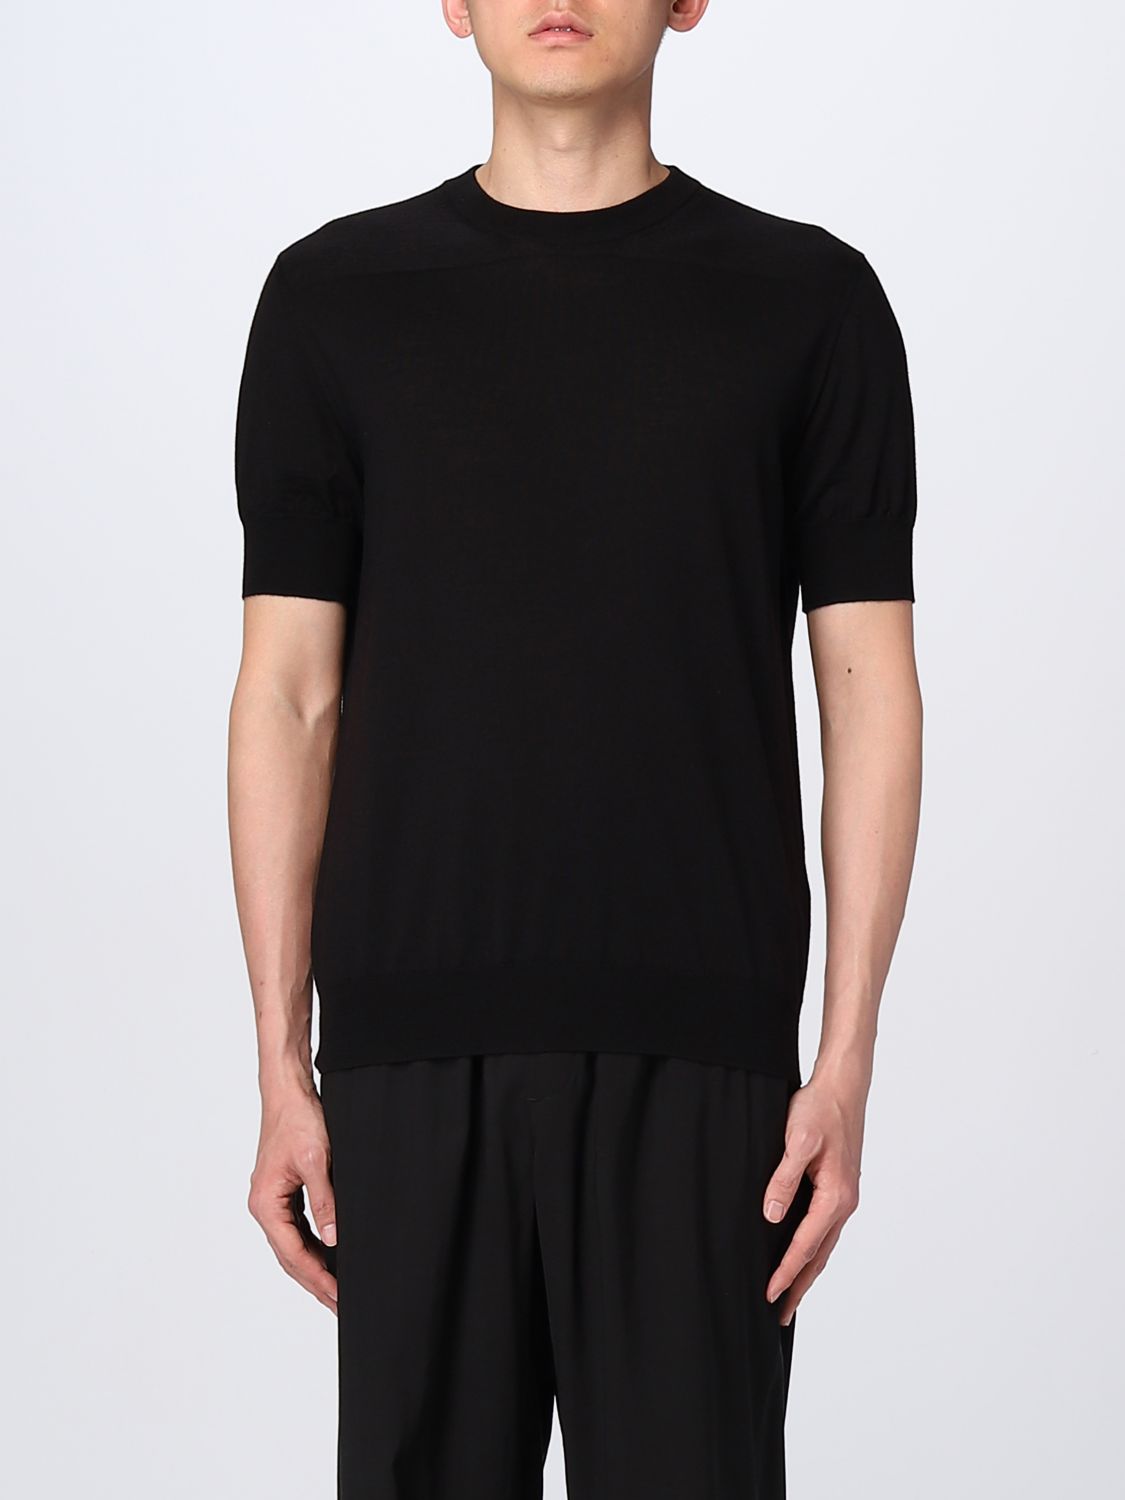 JIL SANDER: t-shirt for man - Black | Jil Sander t-shirt ...